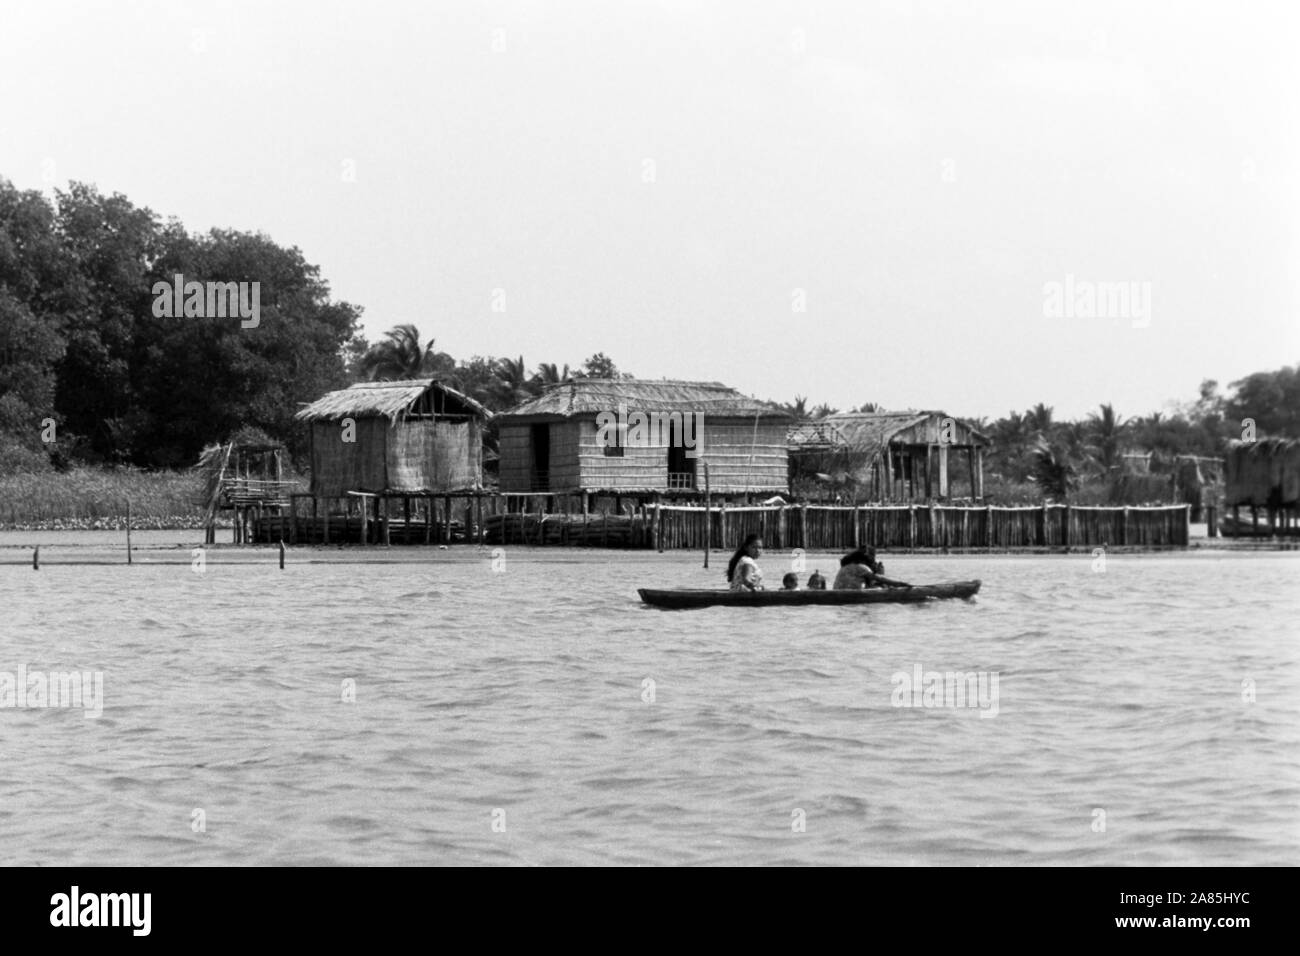 Laguna de Sinamaica am Maracaibo-See, Venezuela, 1960er. Laguna de Sinamaica at Lake Maracaibo, Venezuela, 1960s. Stock Photo